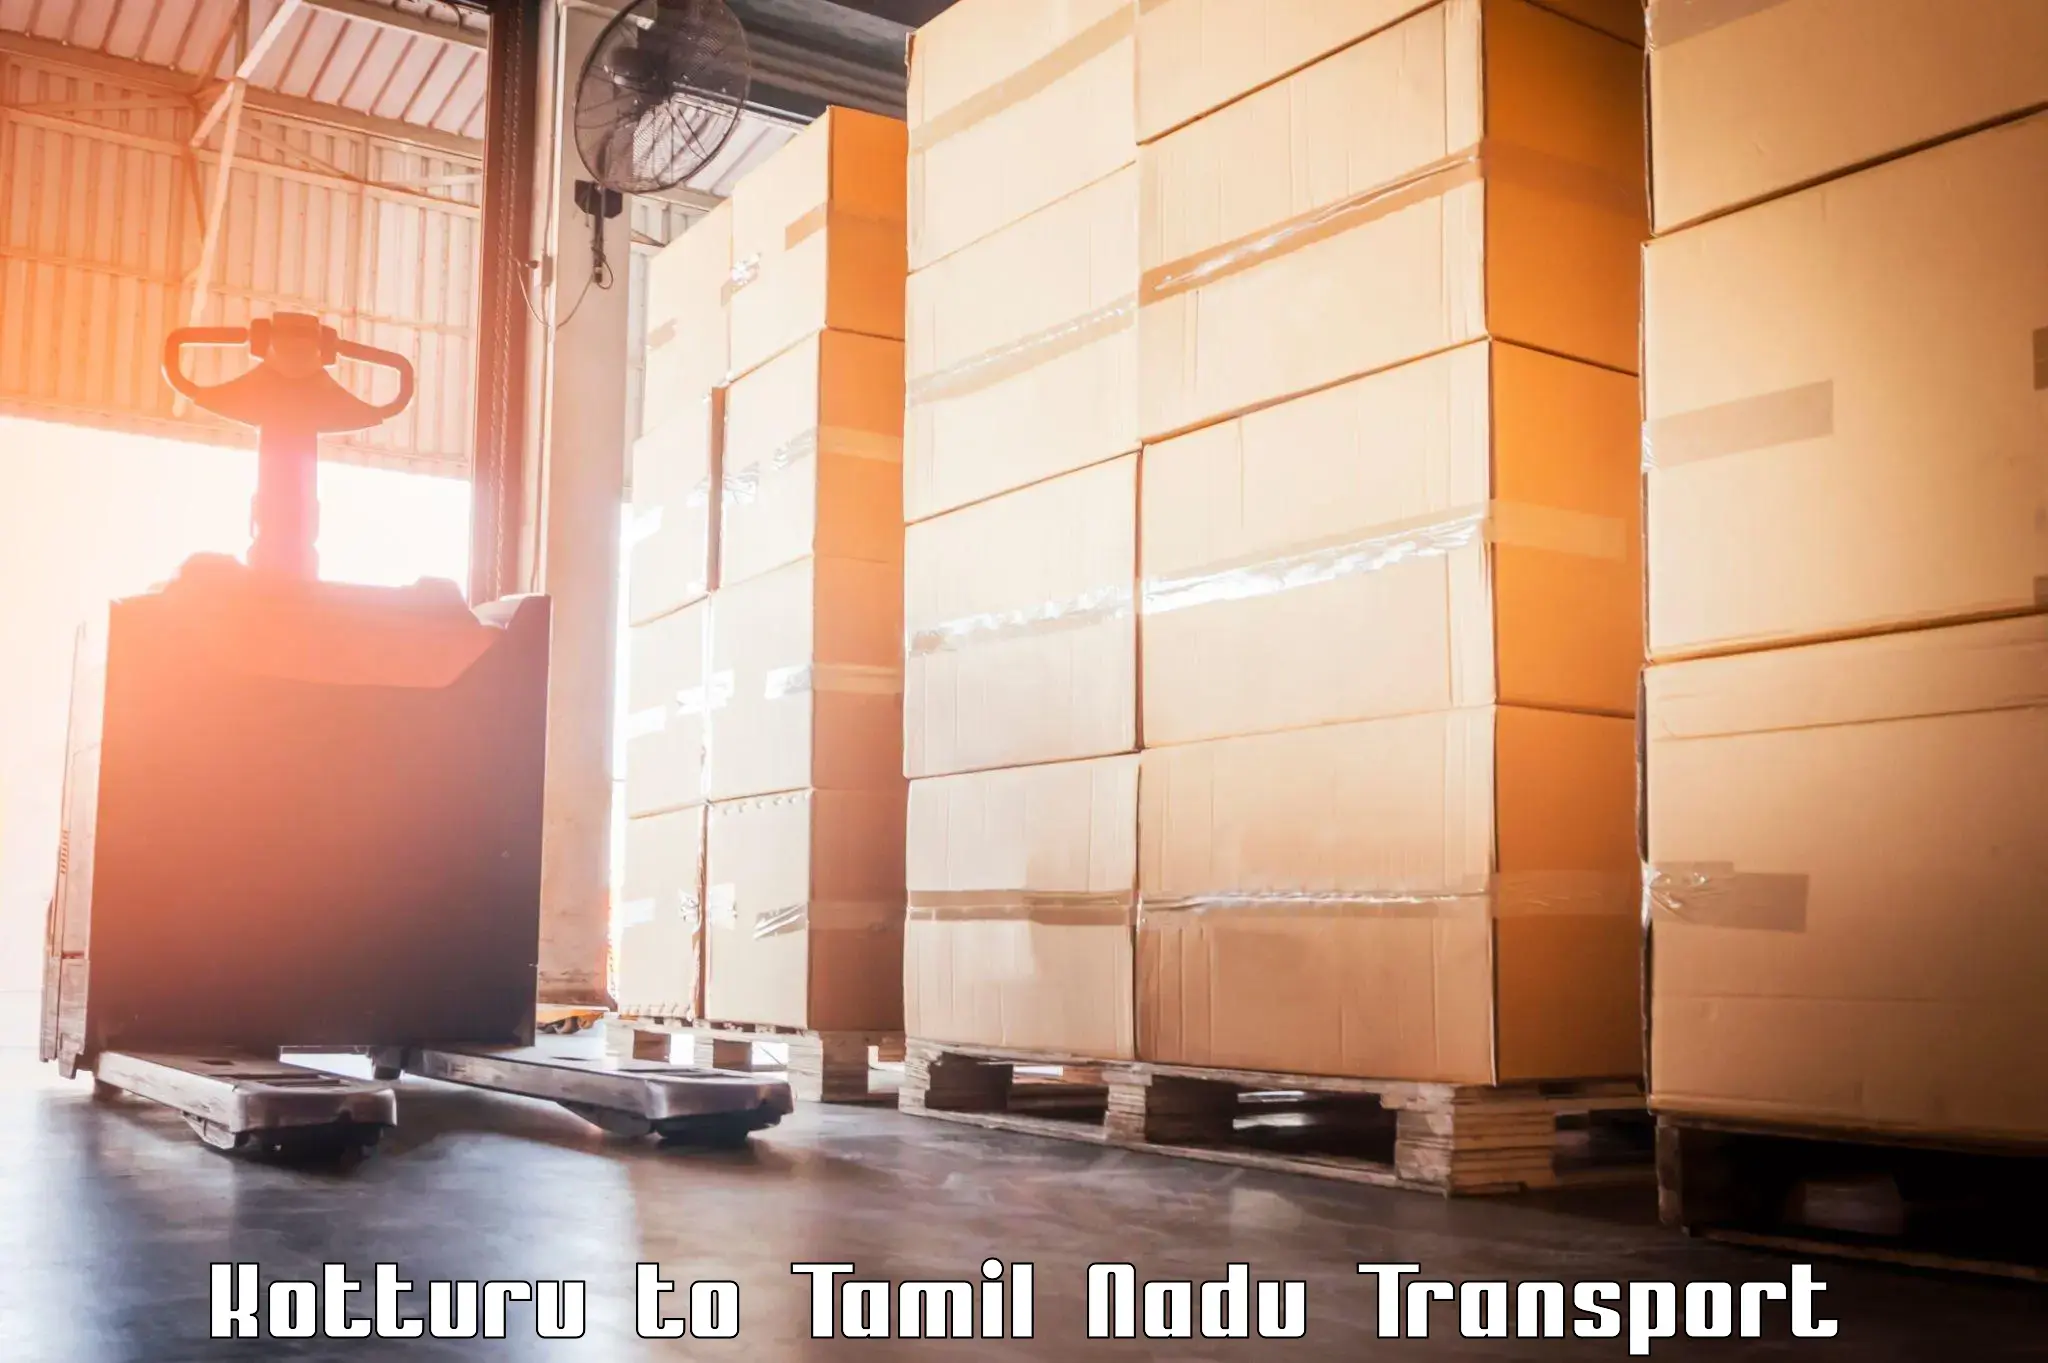 Luggage transport services Kotturu to Palladam